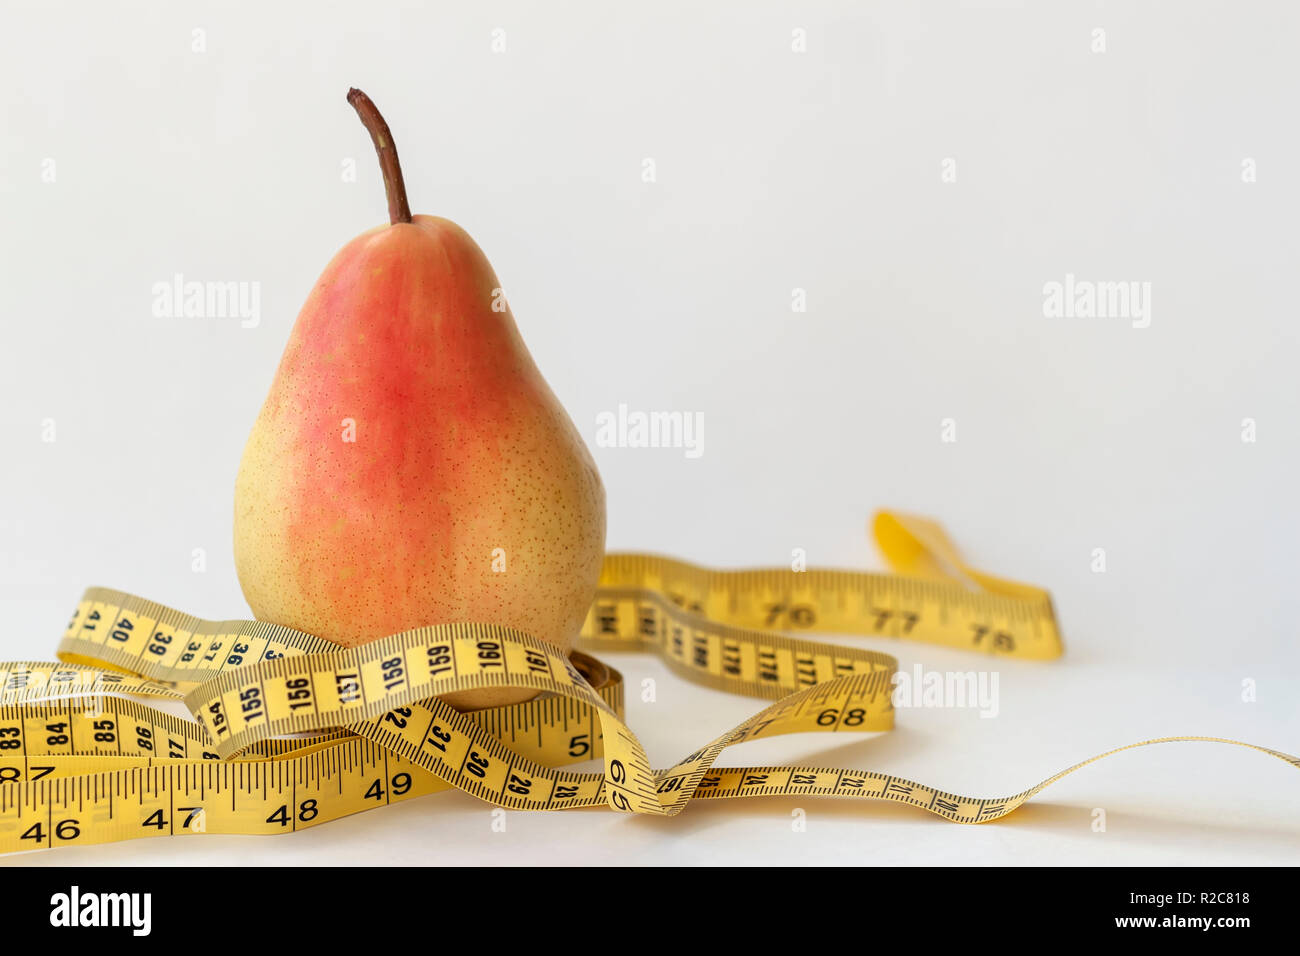 Giallo maturo pera e nastro di misurazione su sfondo chiaro, il concetto di uno stile di vita sano, dieta Foto Stock